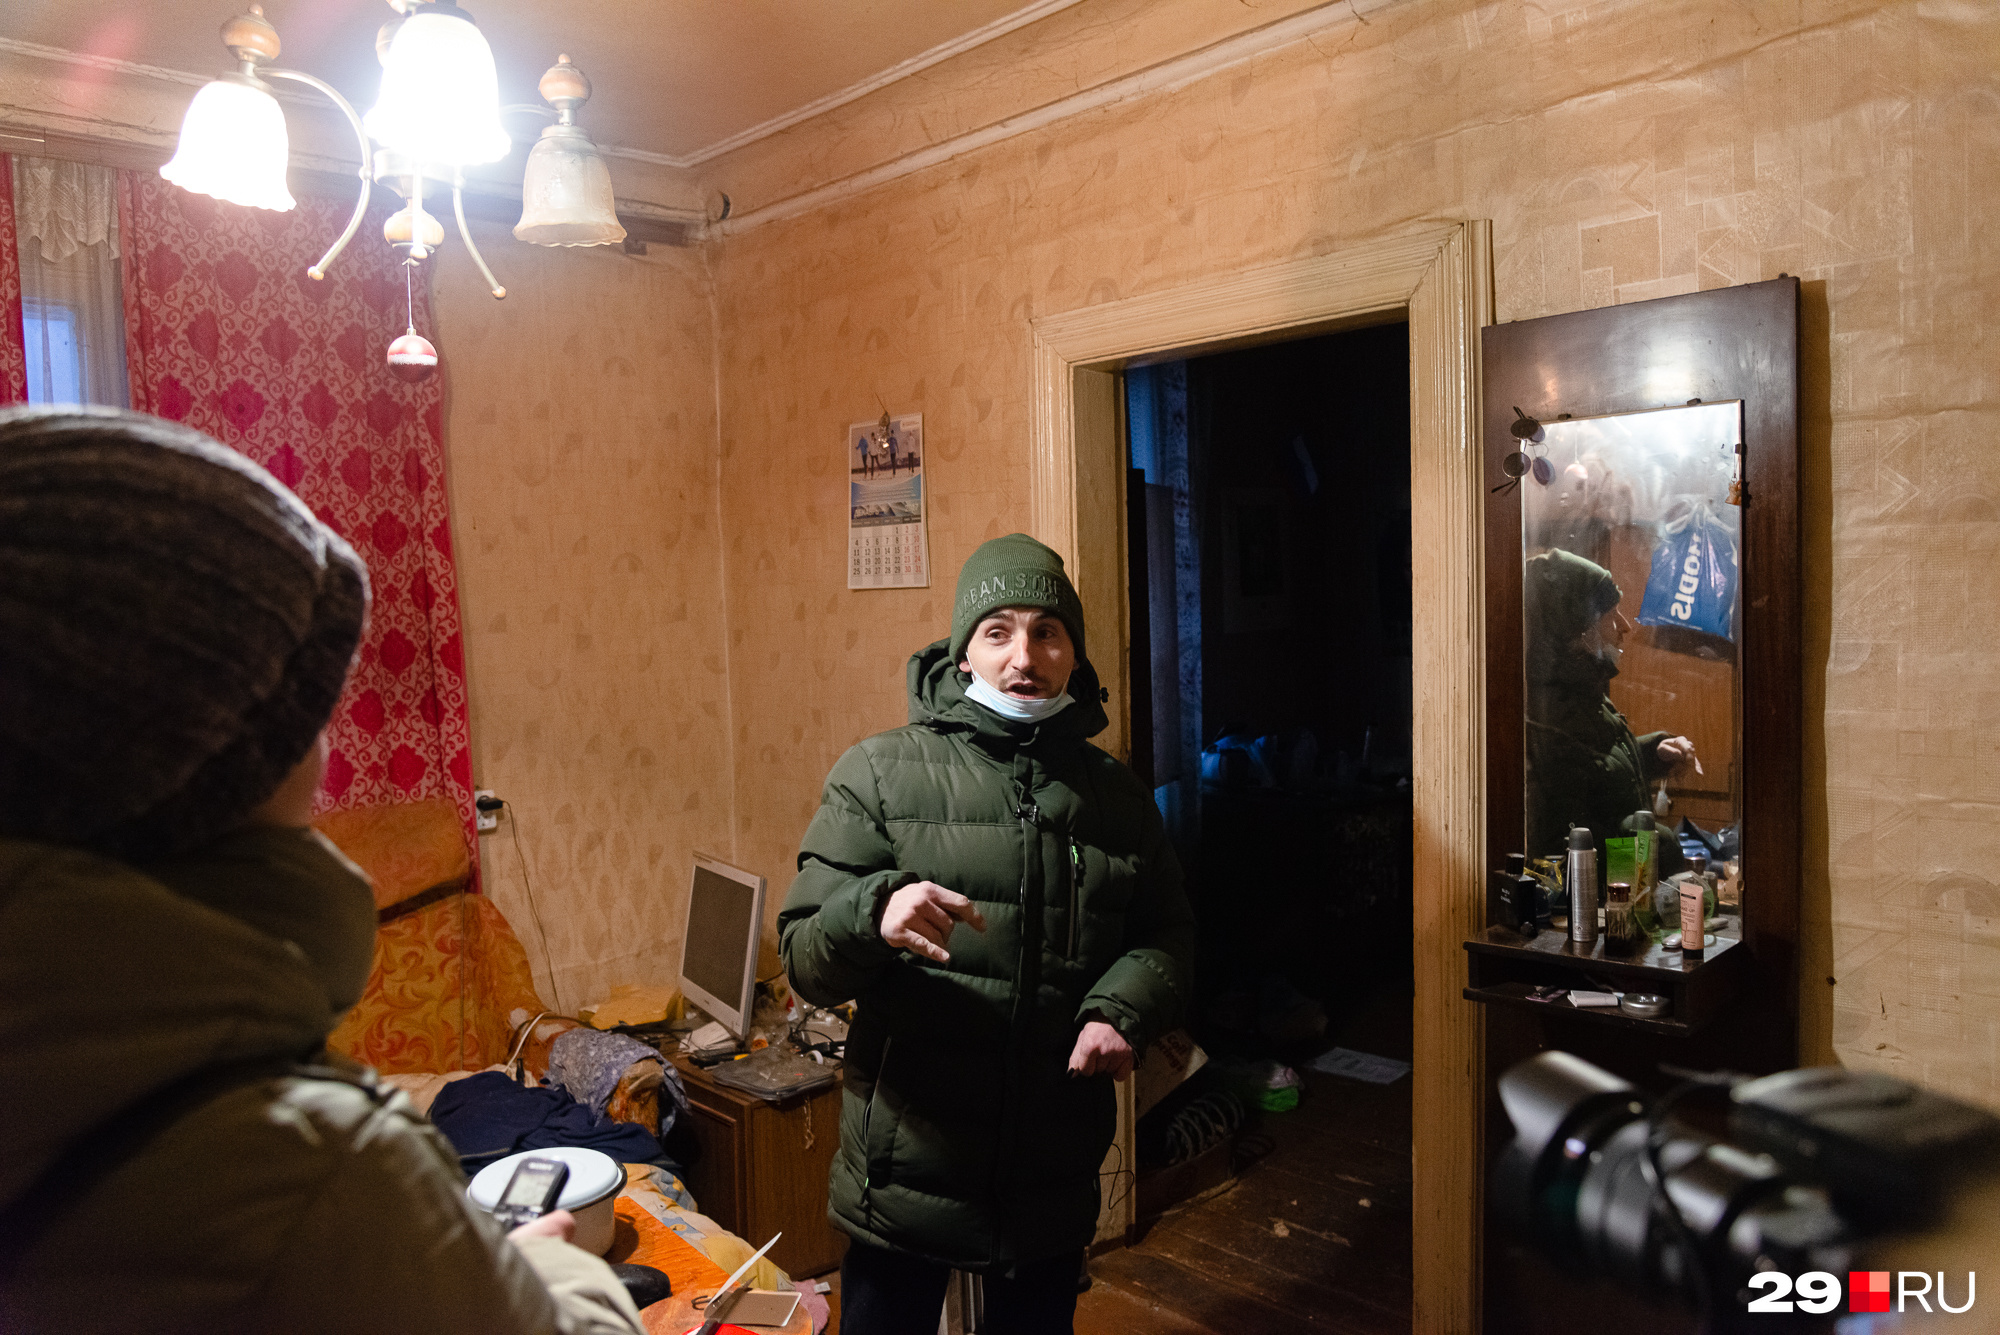 Артём рассказал, что в этой квартире он жил с мамой, но она скончалась в <nobr class="_">2016 году</nobr>. Ему тяжело о ней вспоминать